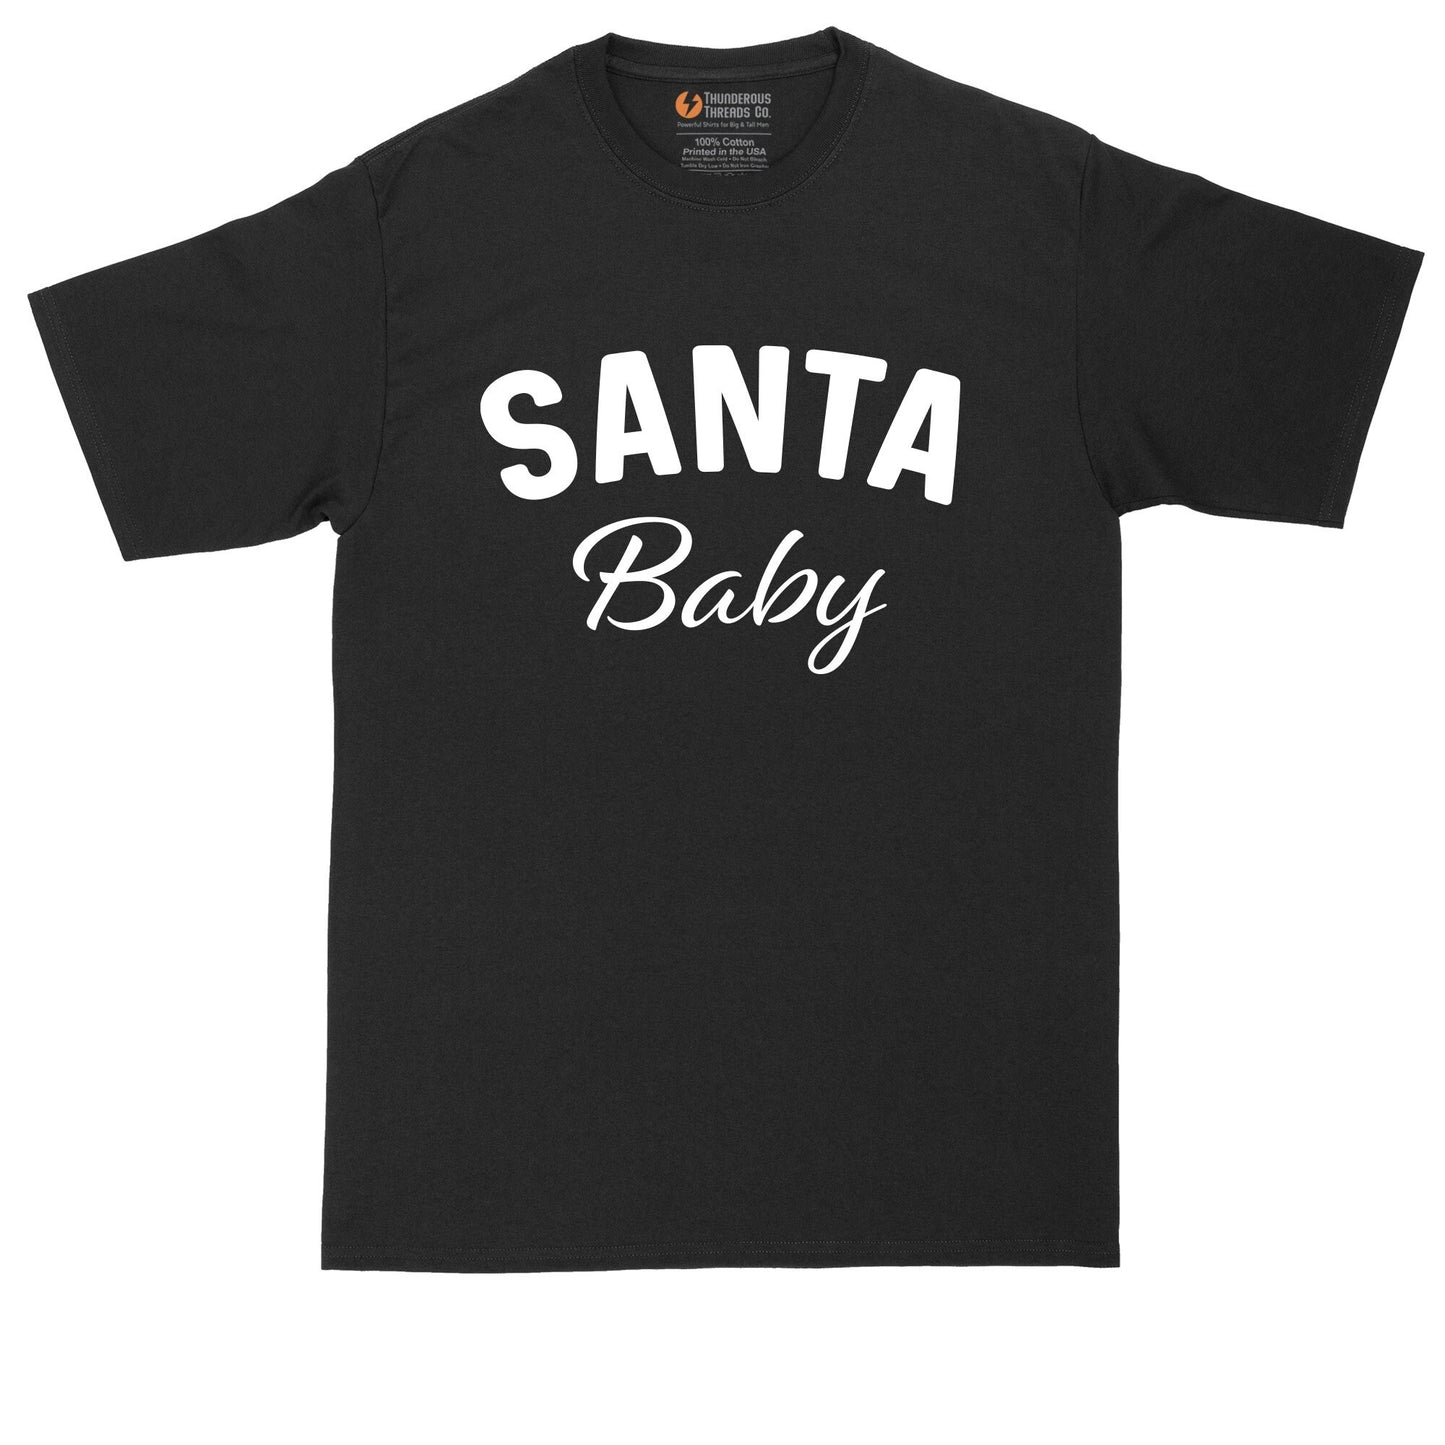 Santa Baby | Mens Big & Tall T-Shirt | Funny Christmas Shirt | Christmas Gift Shirt | Santa Claus Shirt